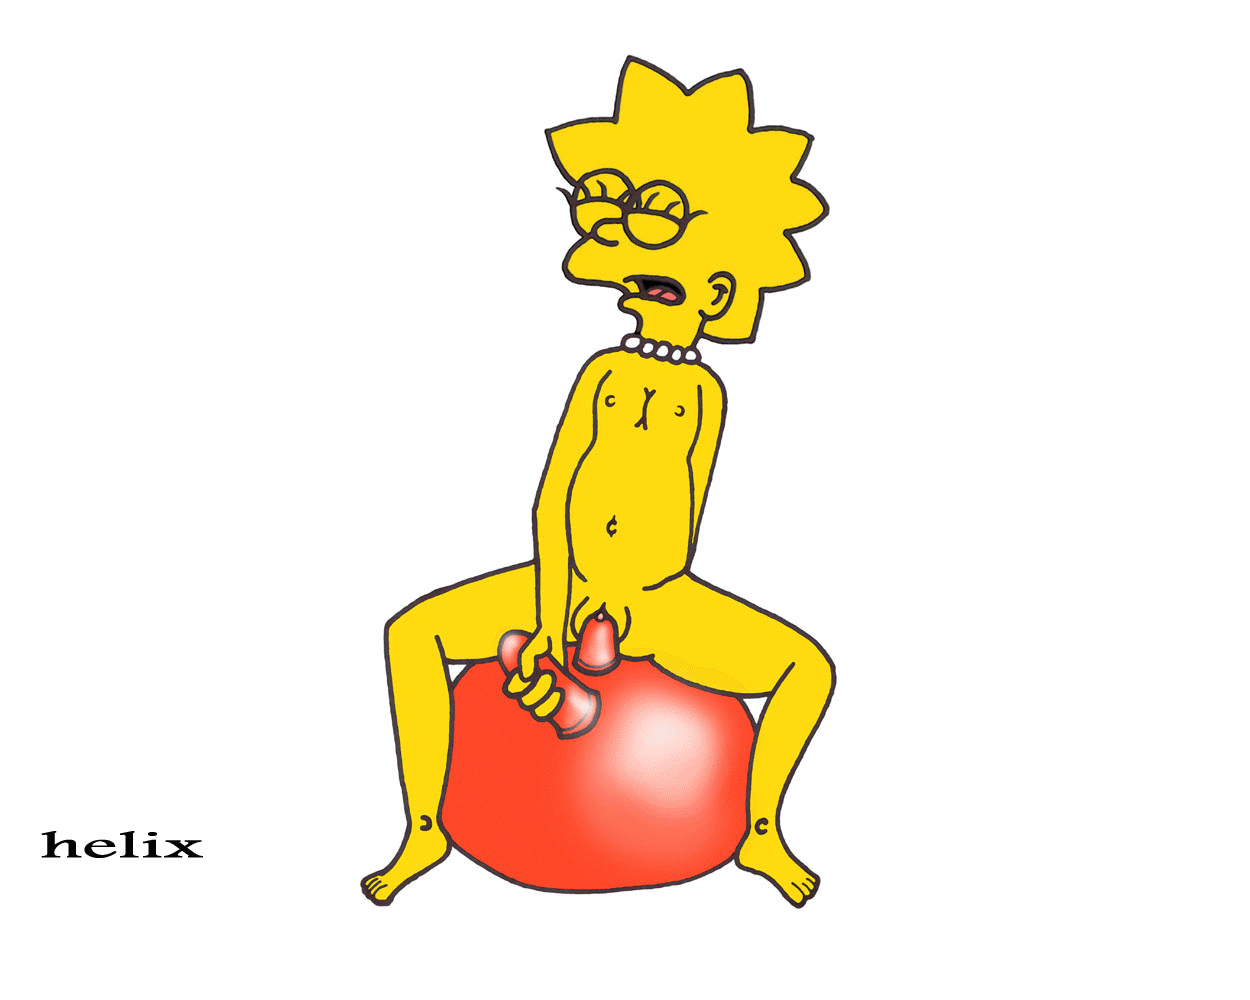 Lisa Simpson Fucked